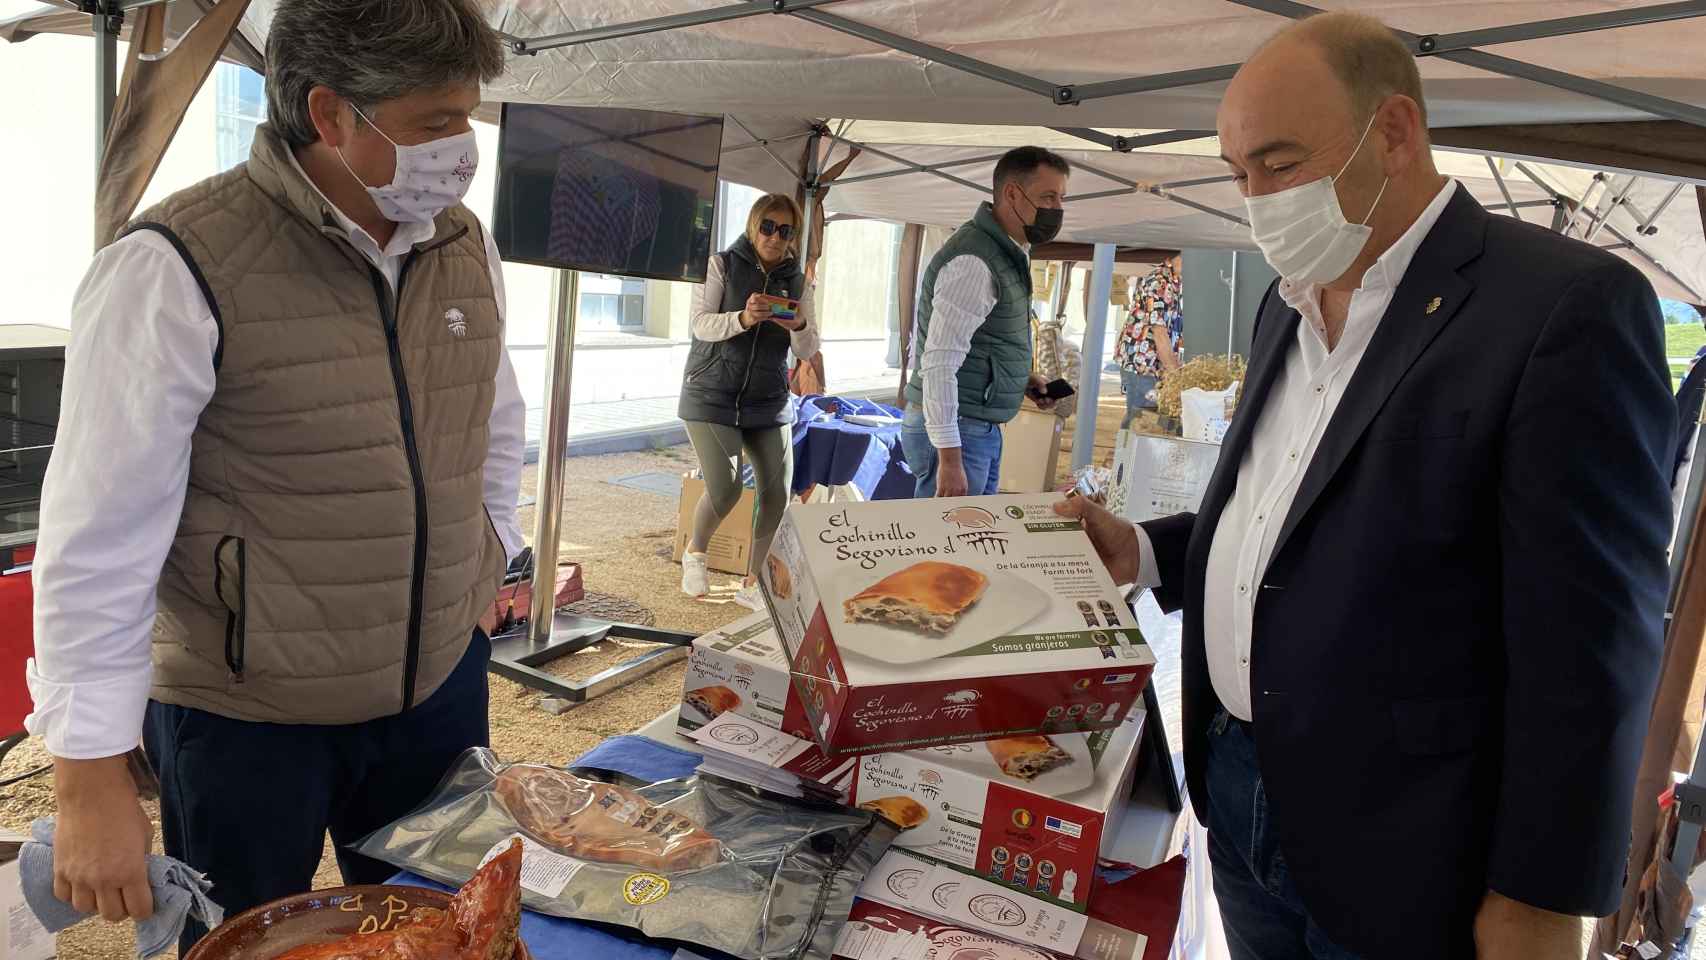 Más de 3.000 personas visitan la exitosa primera edición de la Feria de Alimentos de Segovia